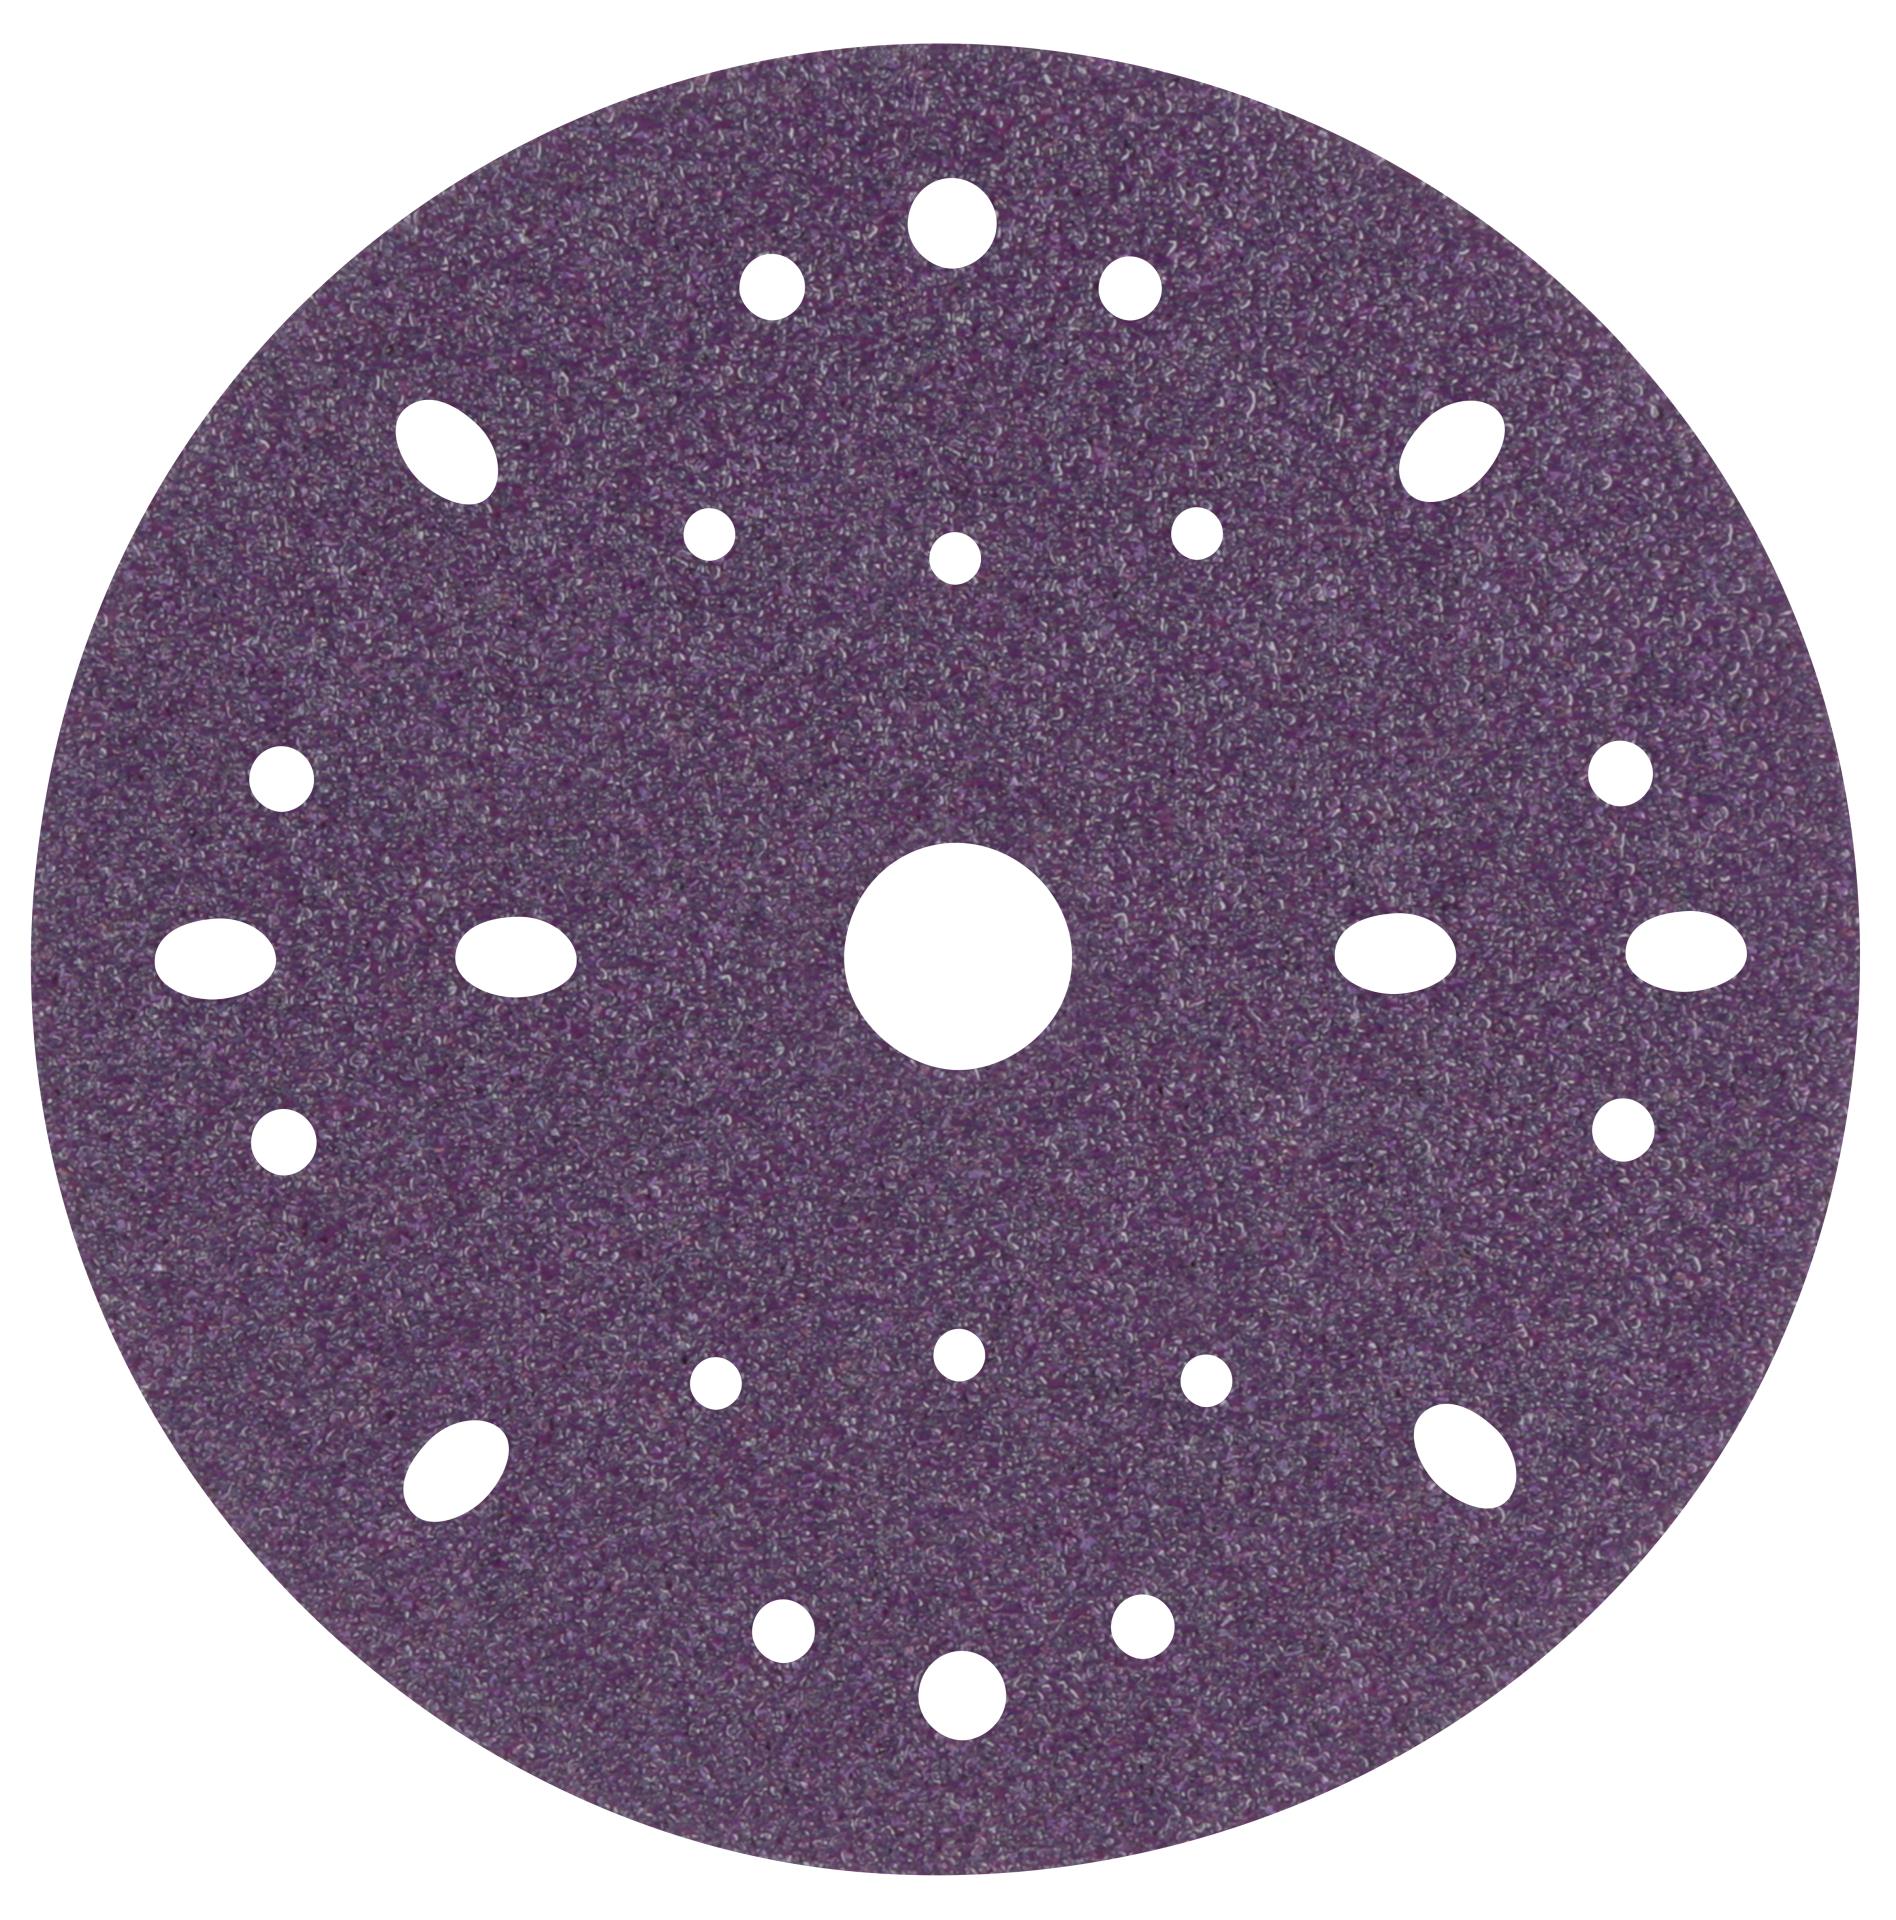 3M 01868 Hookit Purple 4-1/2 x 30 P320 Grit Sheet 